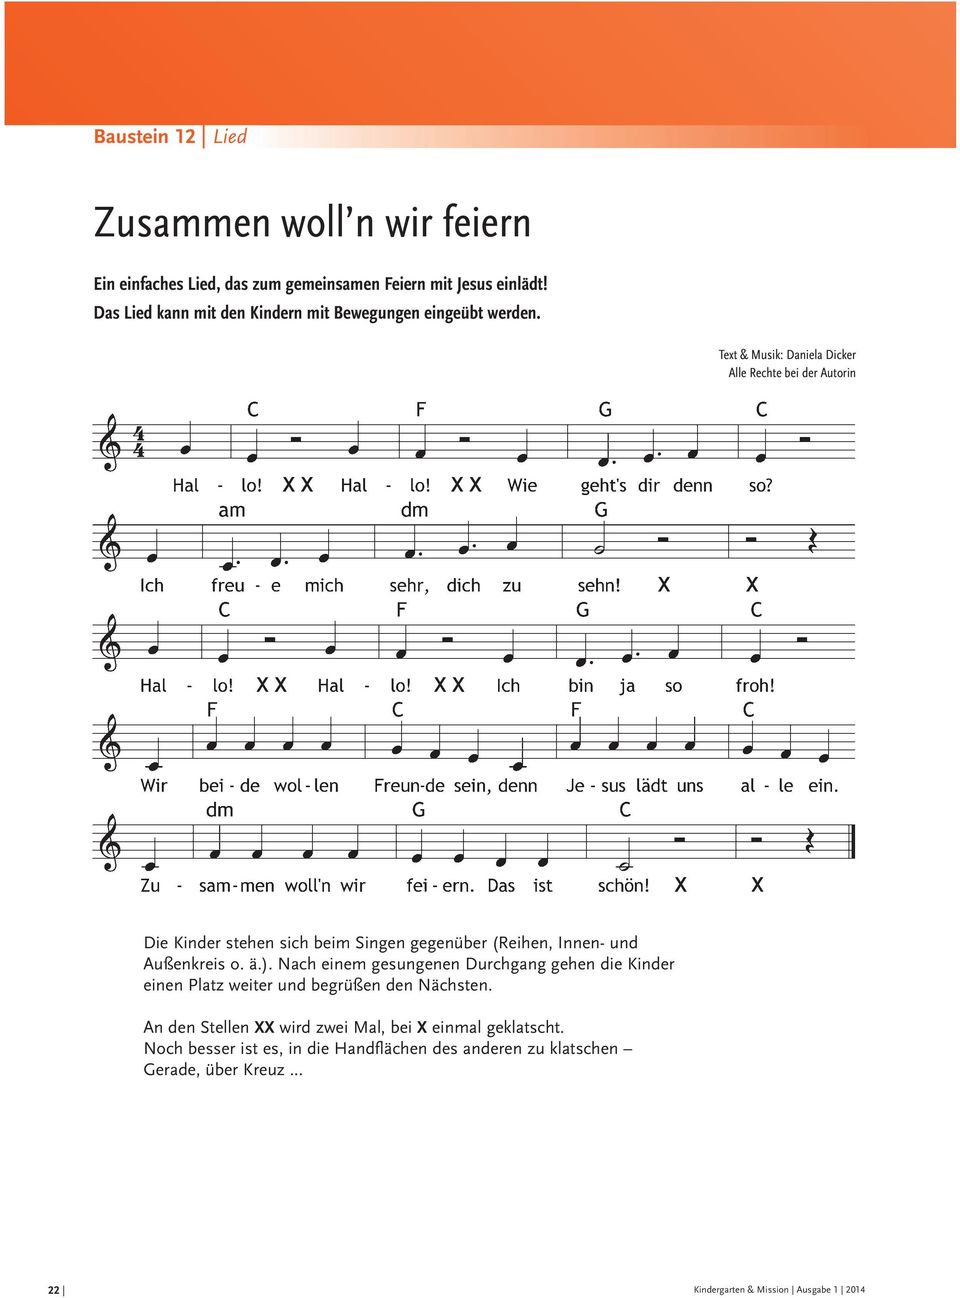 Text & Musik: Daniela Dicker Alle Rechte bei der Autorin Die Kinder stehen sich beim Singen gegenüber (Reihen, Innen- und Außenkreis o. ä.